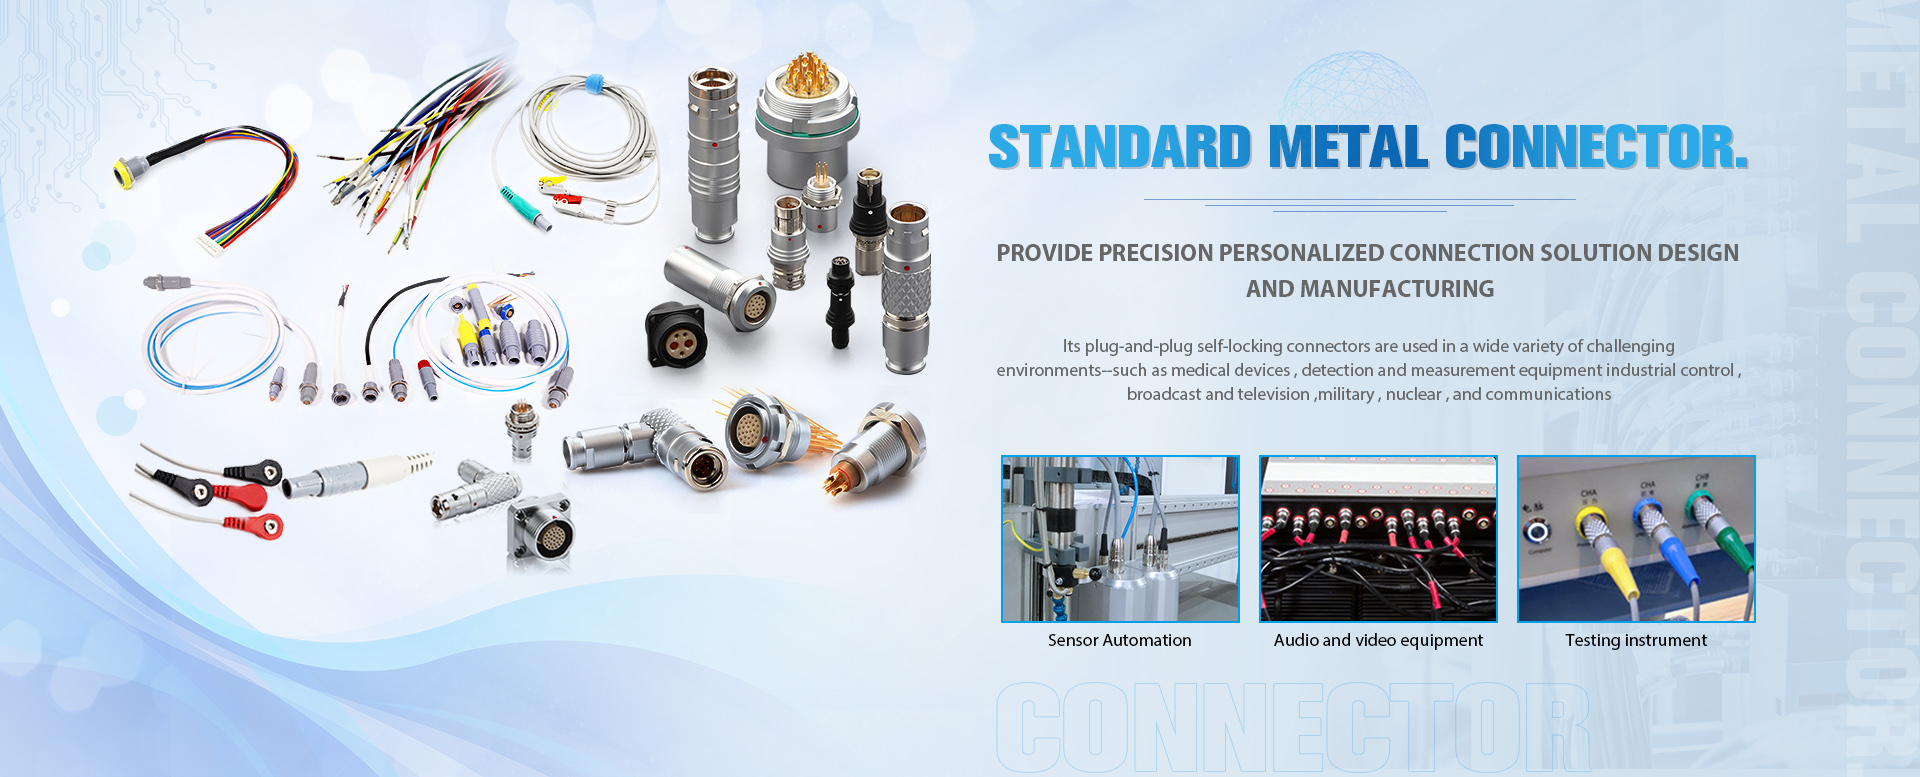 Conector metálico estándar